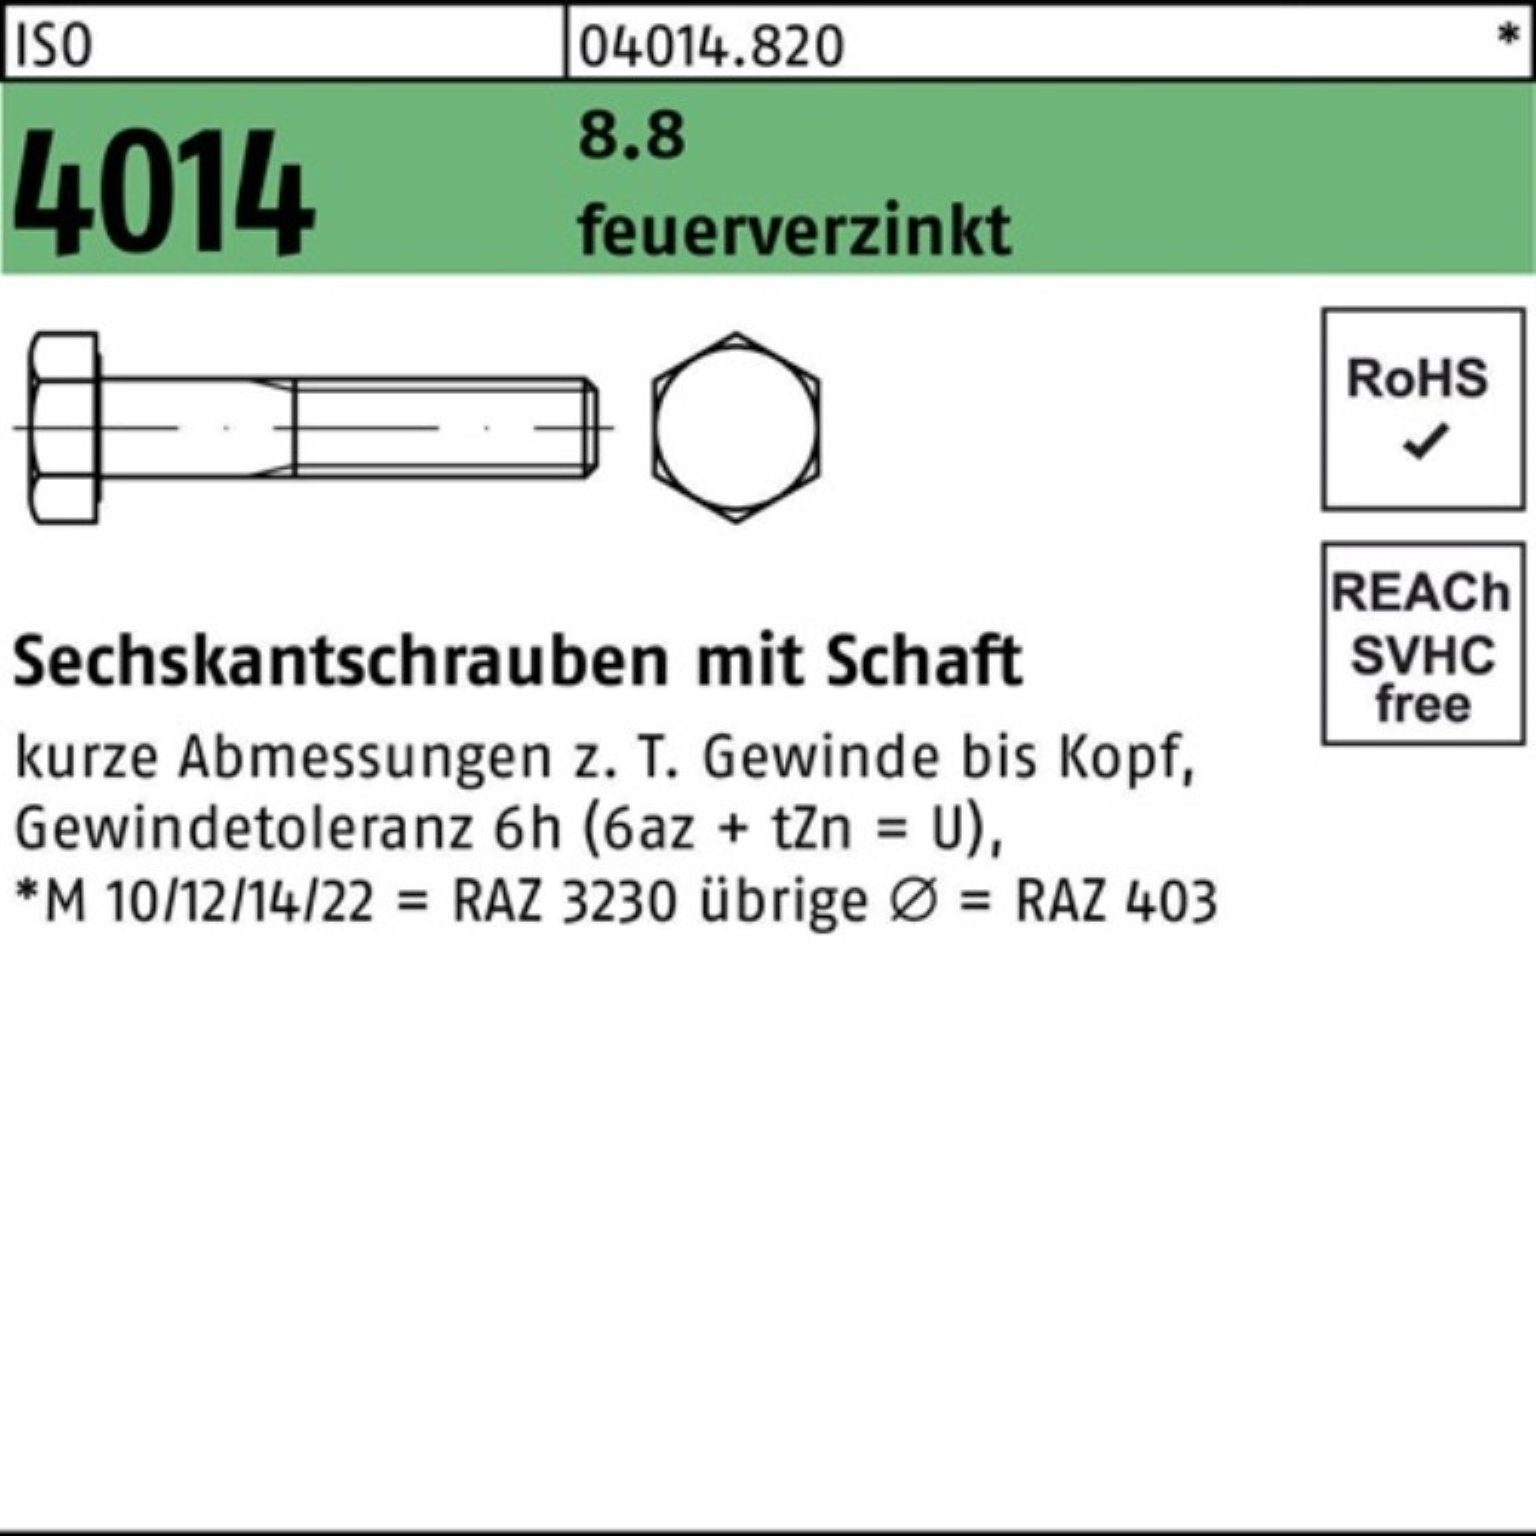 Bufab Sechskantschraube 100er Pack Sechskantschraube ISO 4014 Schaft M20x 110 8.8 feuerverz. 2